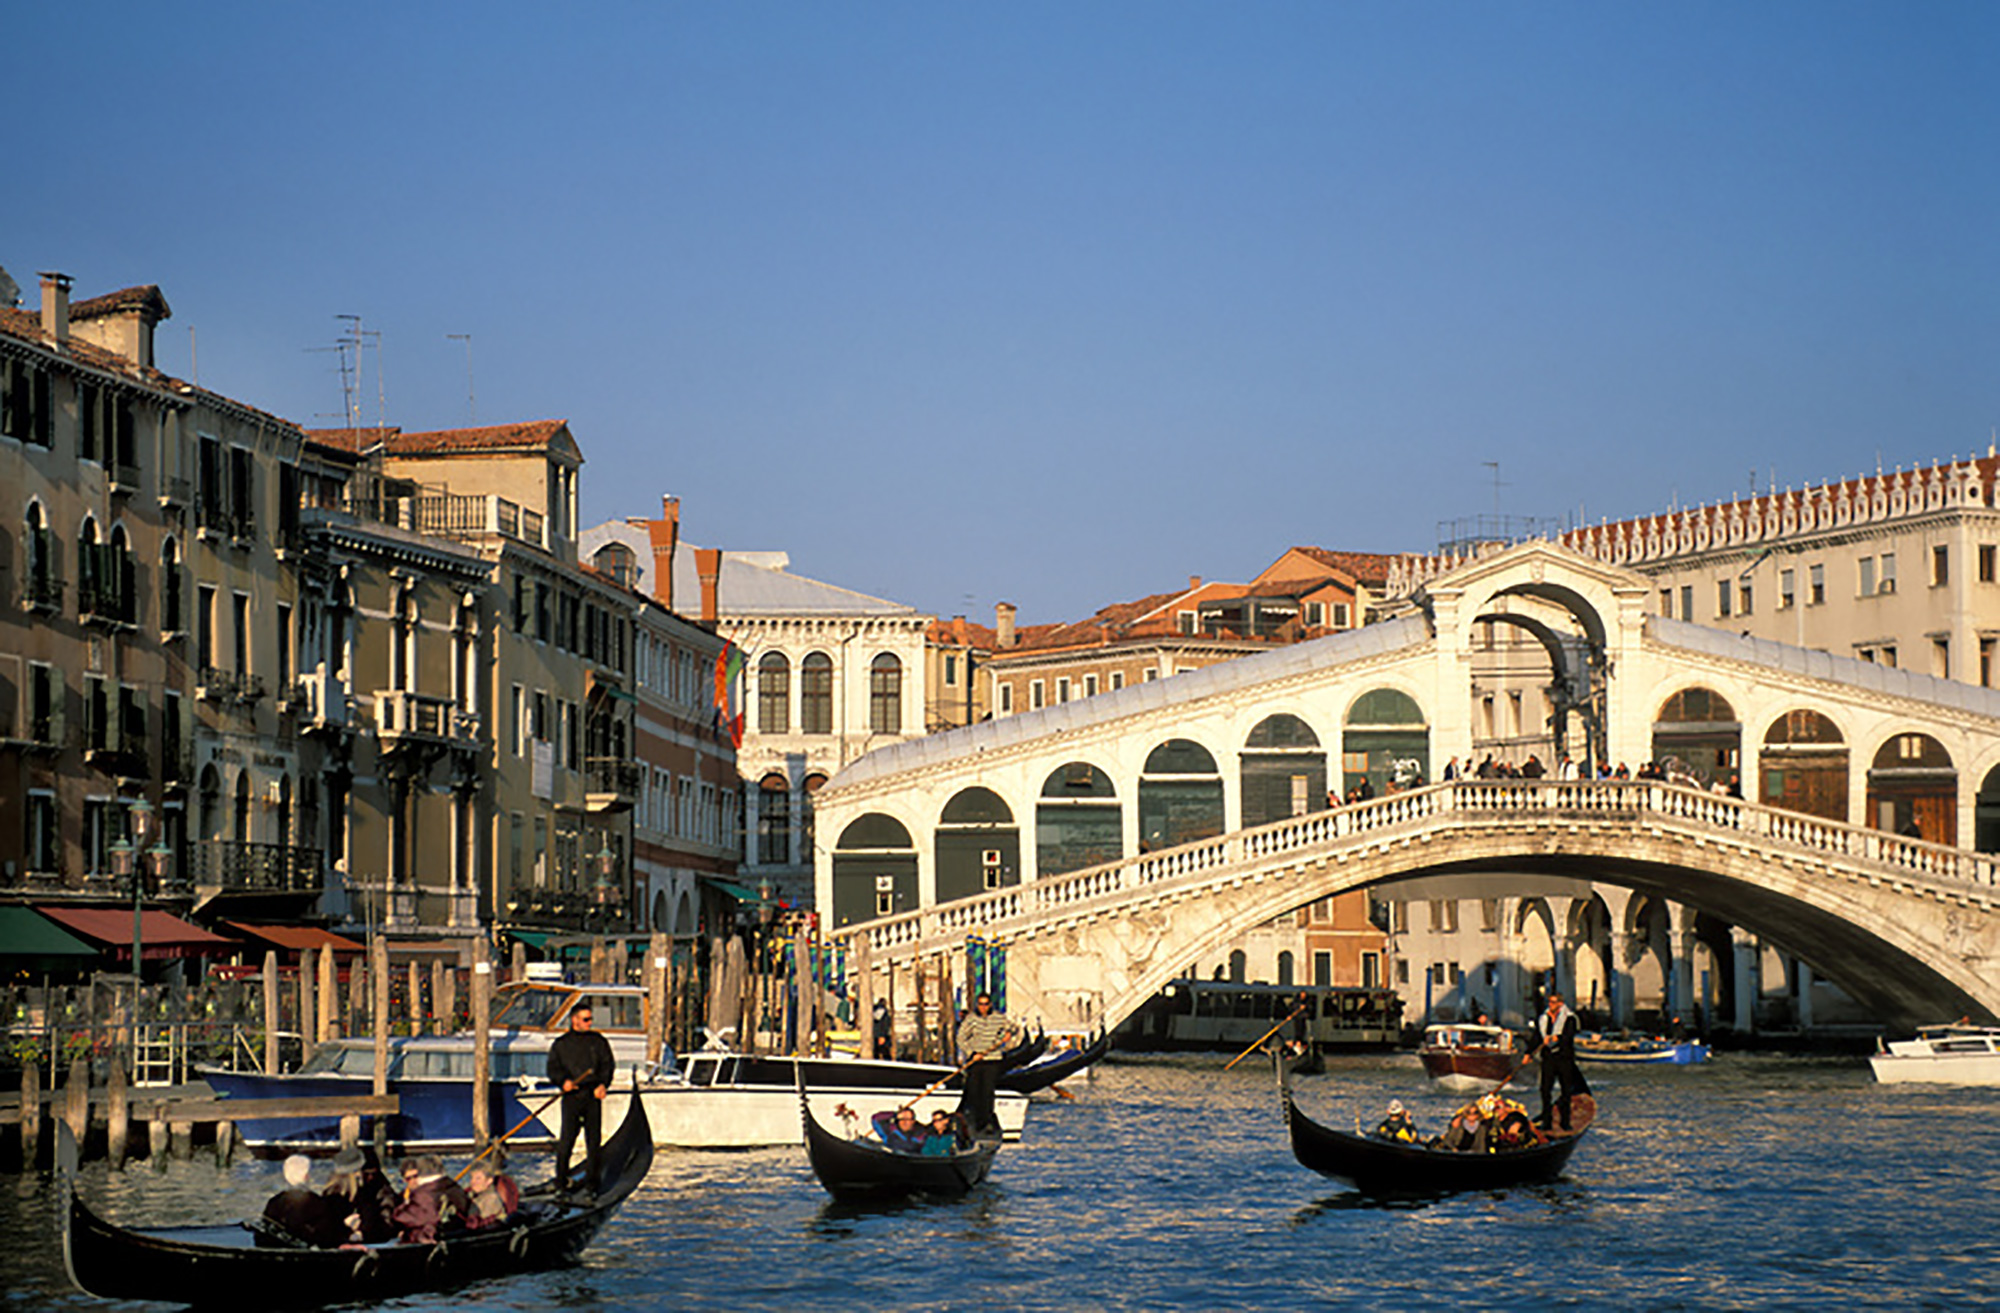 1._Venice_Italy